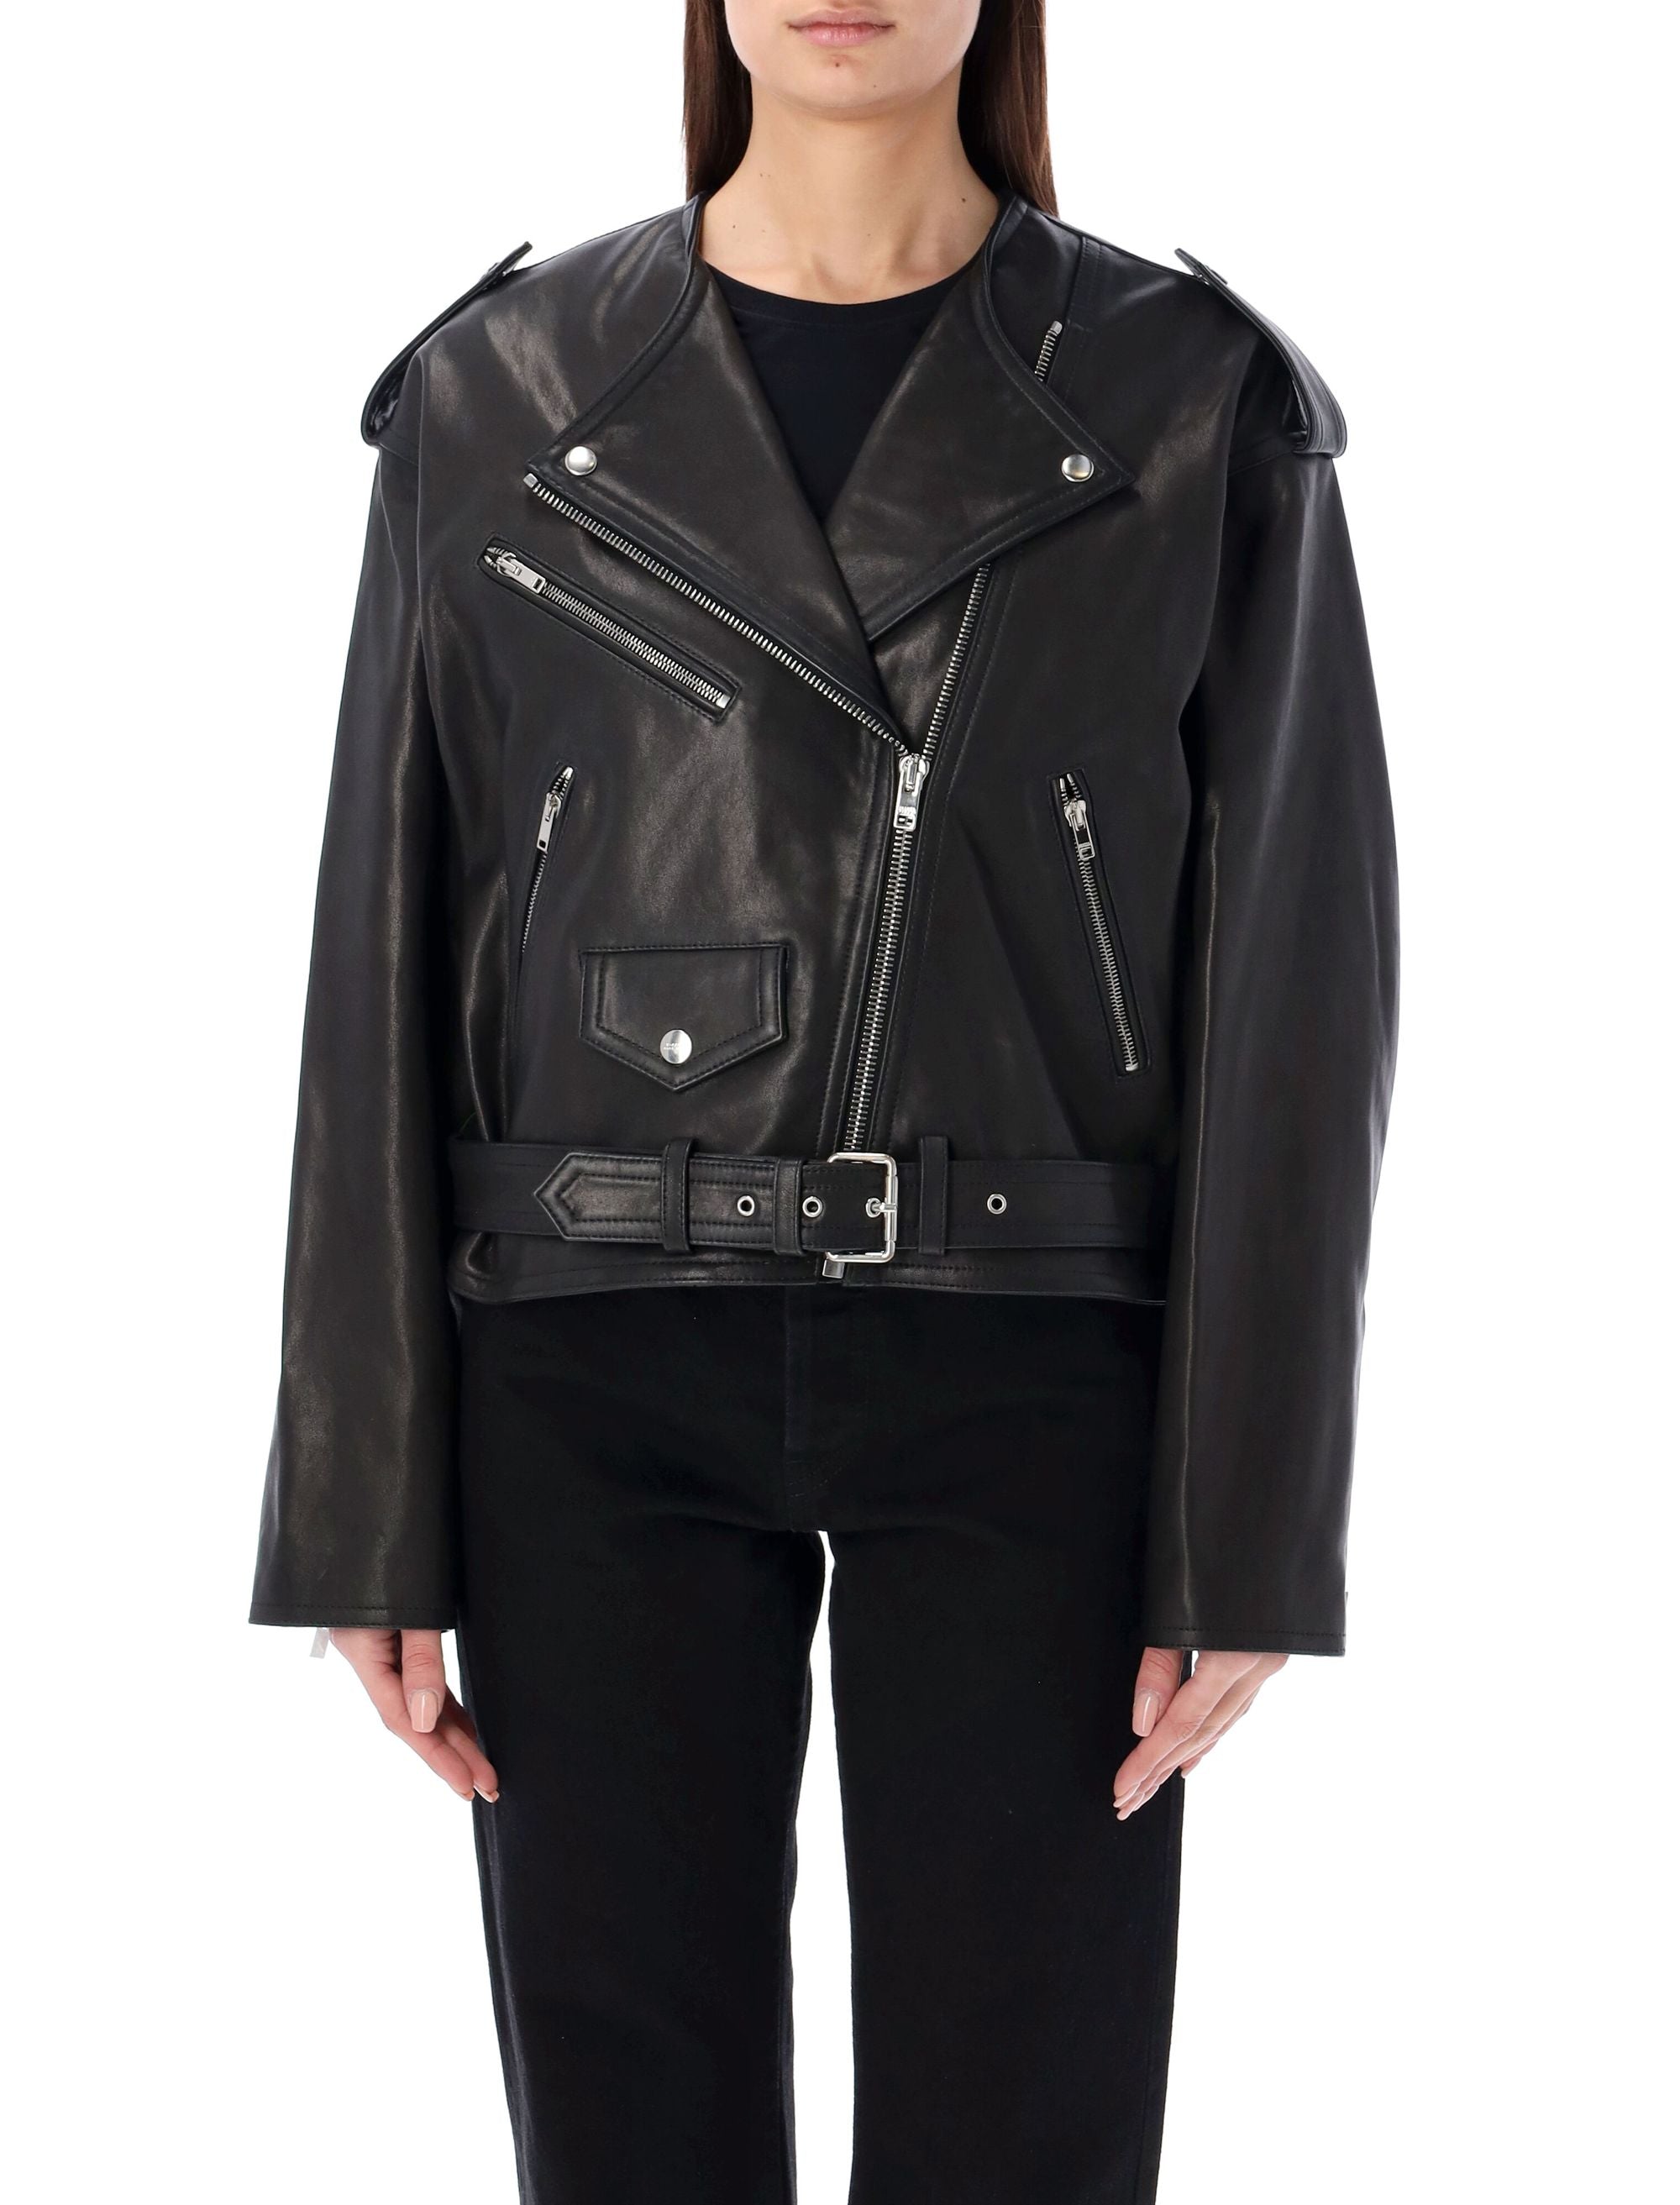 Isabel Marant Stylish Black Leather Jacket With Edgy Details For Women